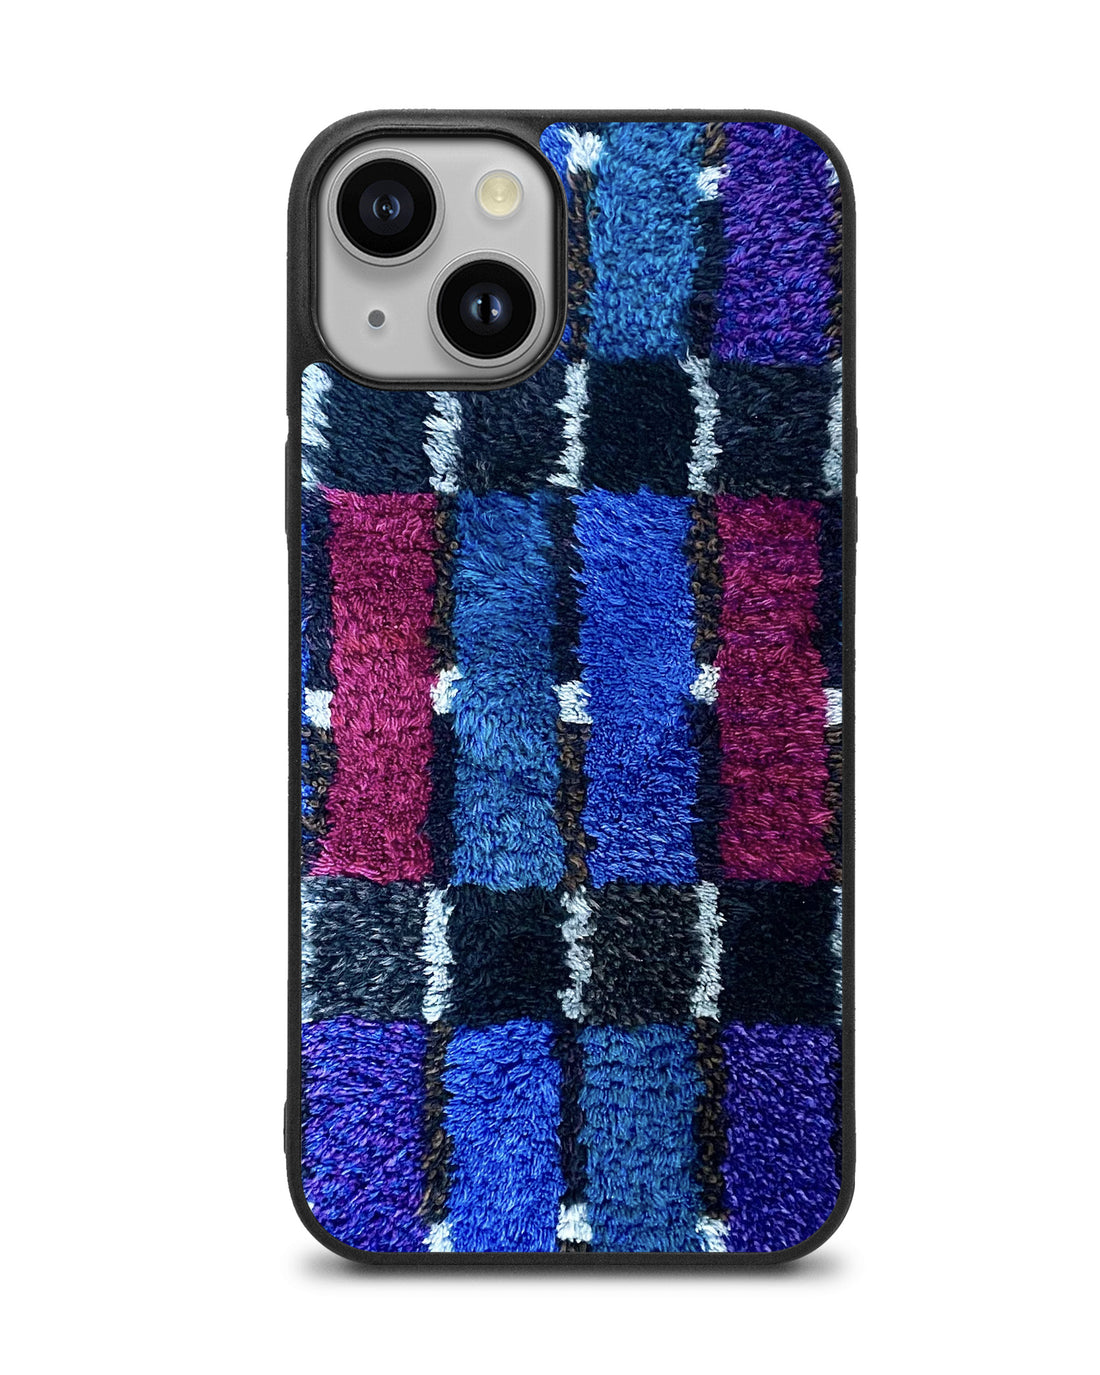 Blue Shaggin' Wagon iPhone Case